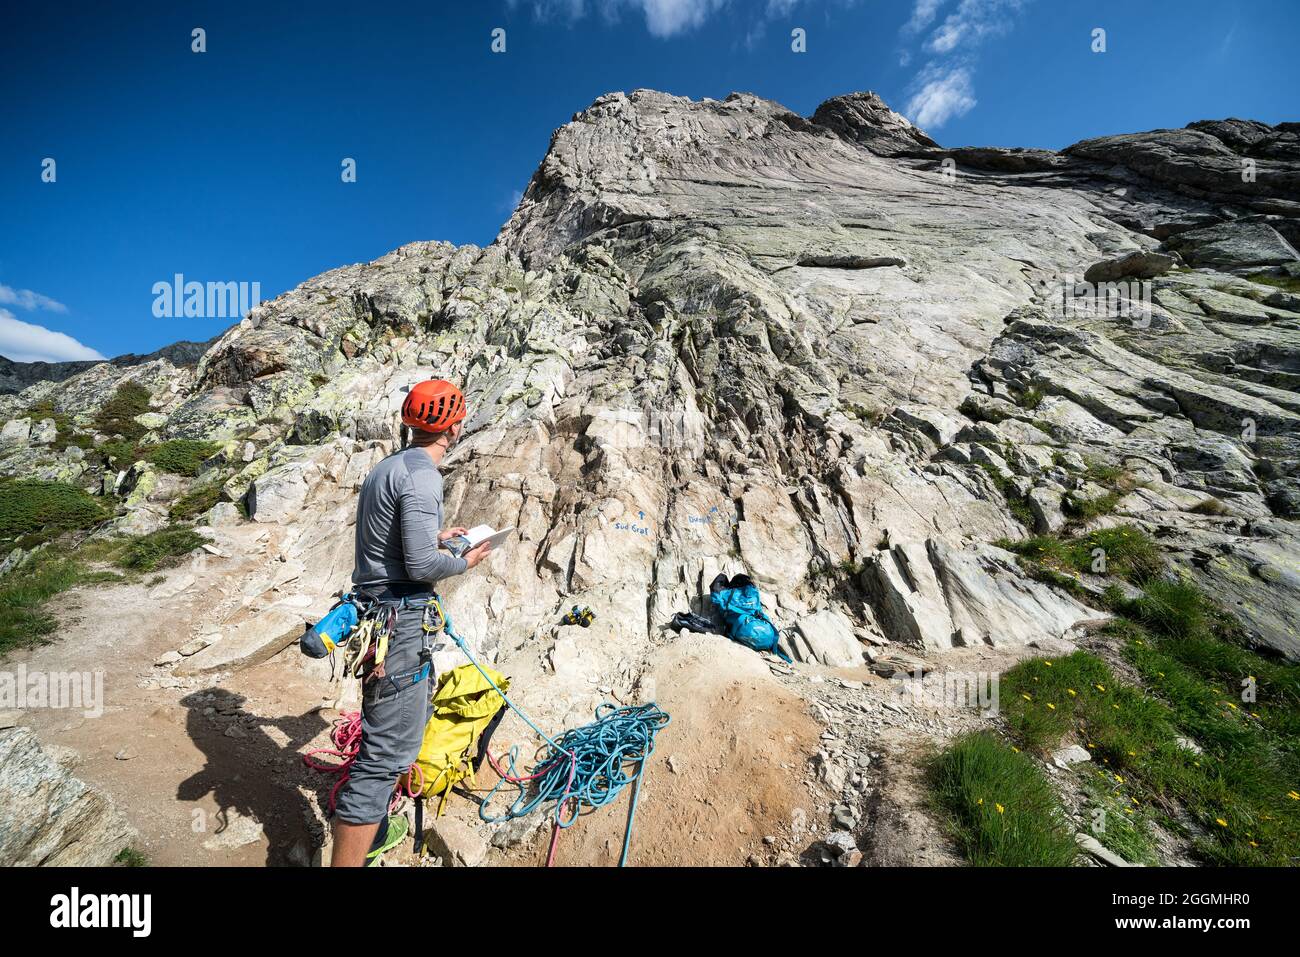 A rock climber getting ready for climbing near Göscheneralp, Switzerland, Alps Stock Photo